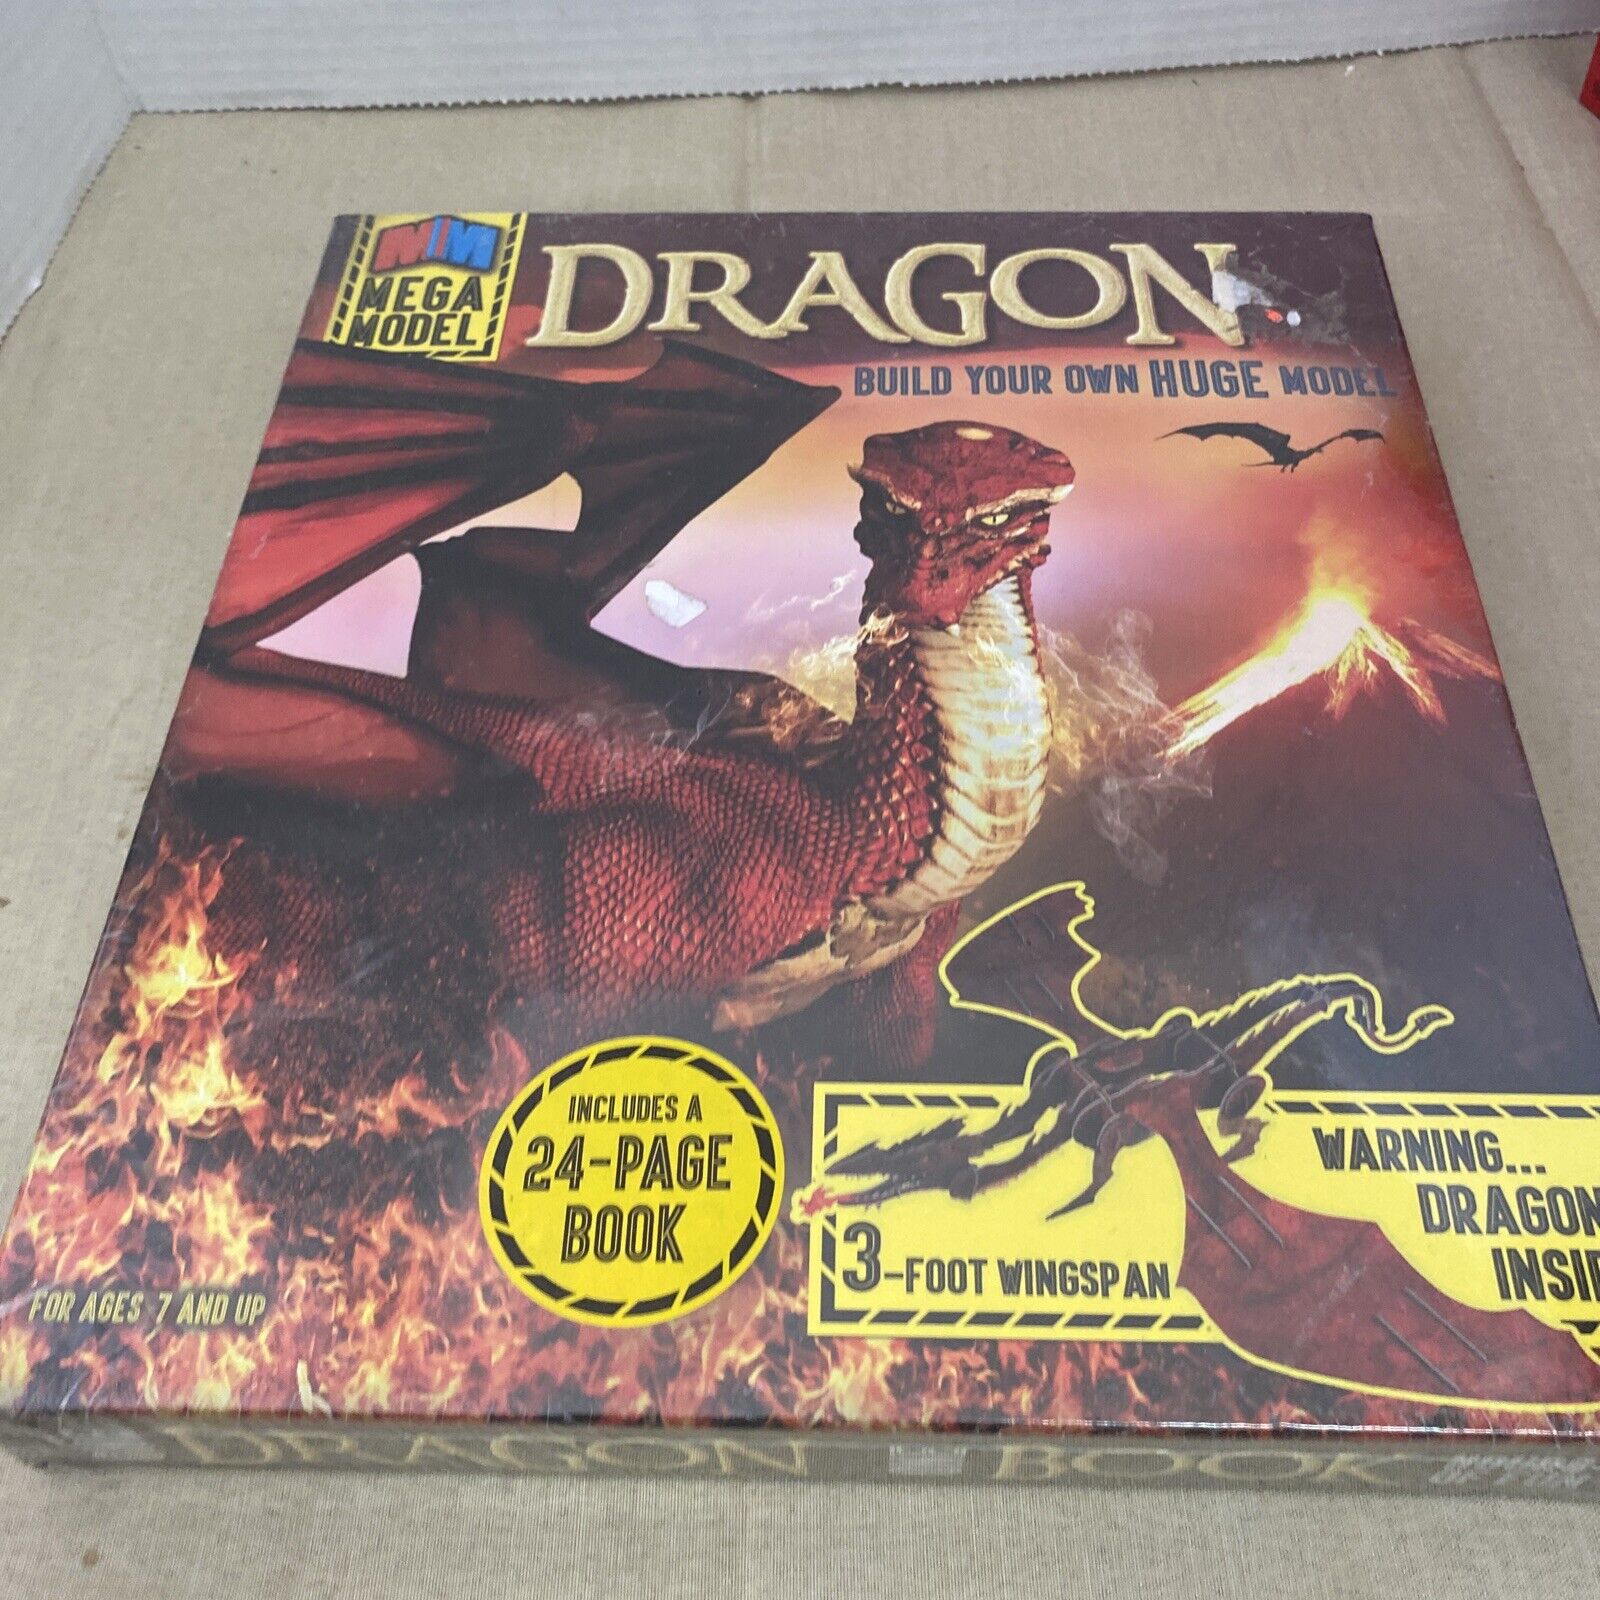 New 3-D Mega Model: DRAGON by Deborah Kespert (Build Your Own HUGE Dragon) Fx